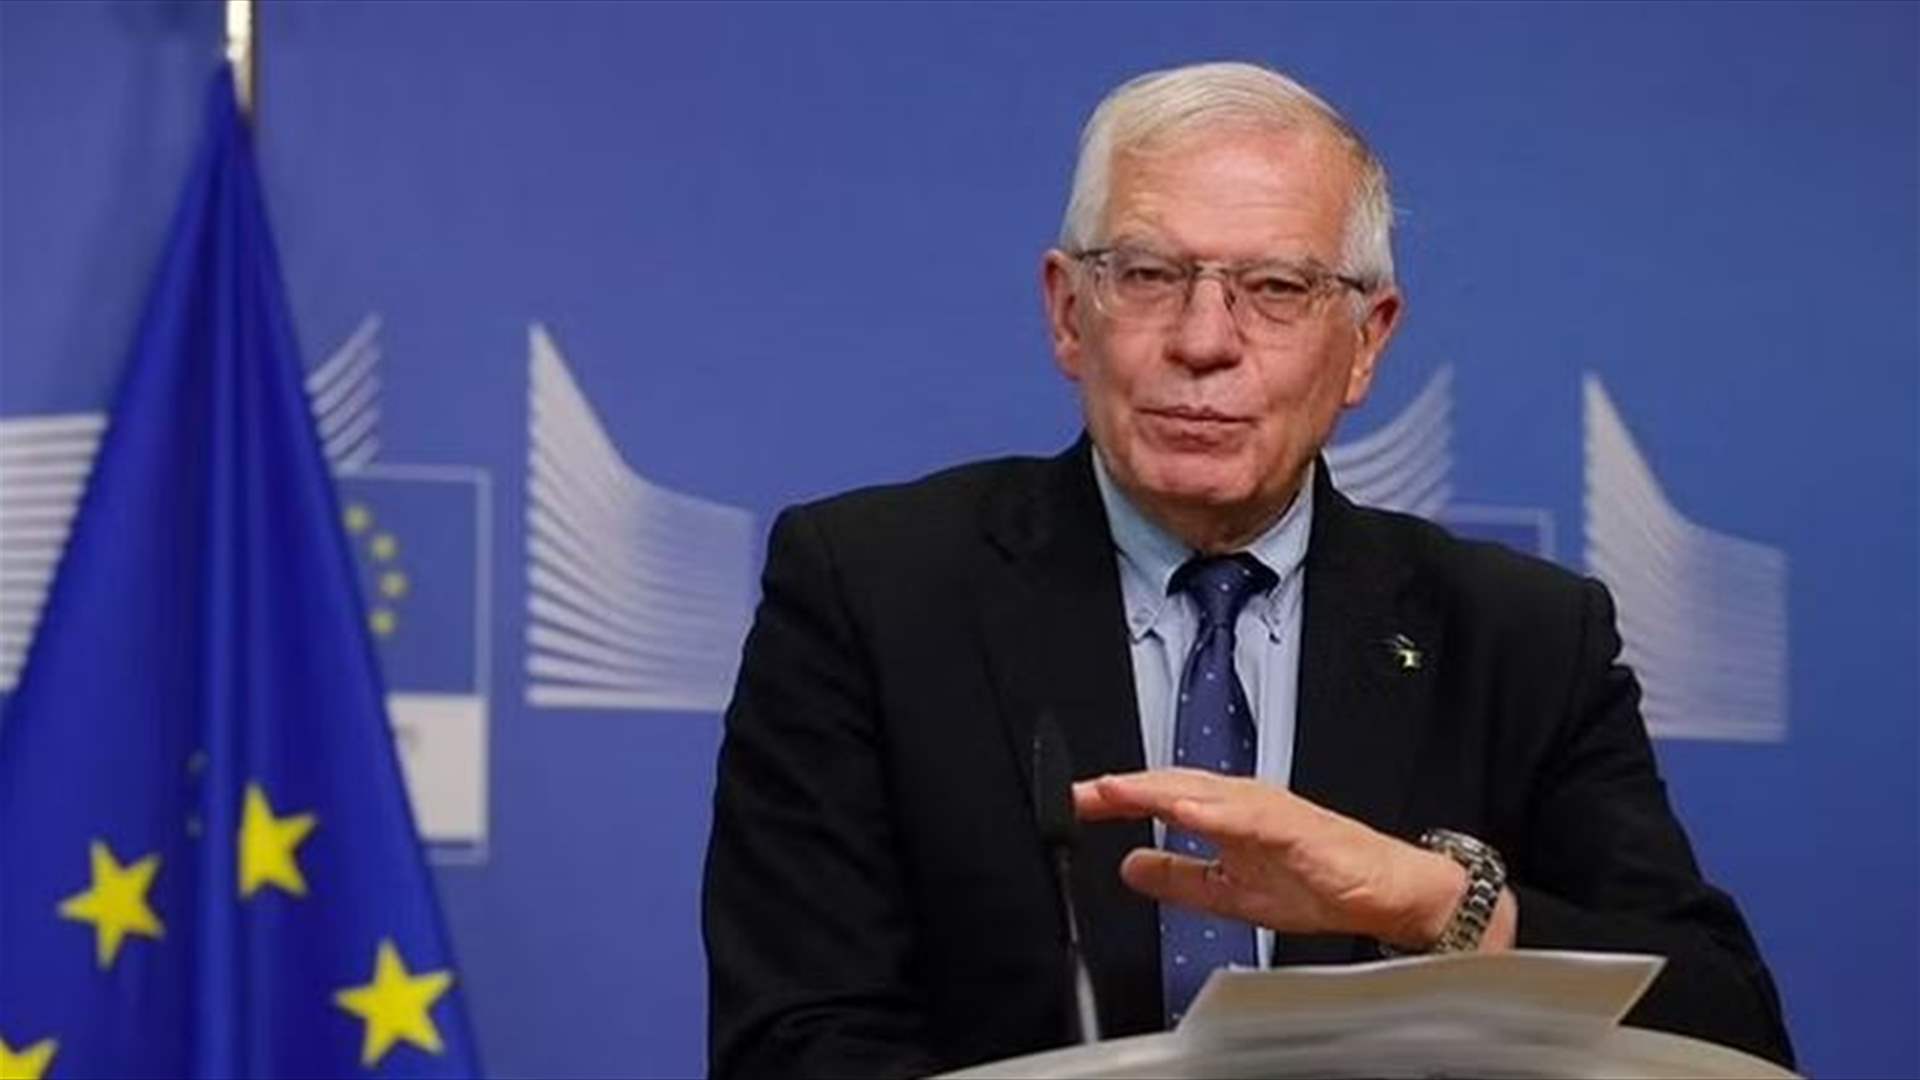 بوريل يؤكد أن الاتحاد الأوروبي سيتصدّى لأي انتهاك خلال تولي روسيا رئاسة مجلس الأمن  